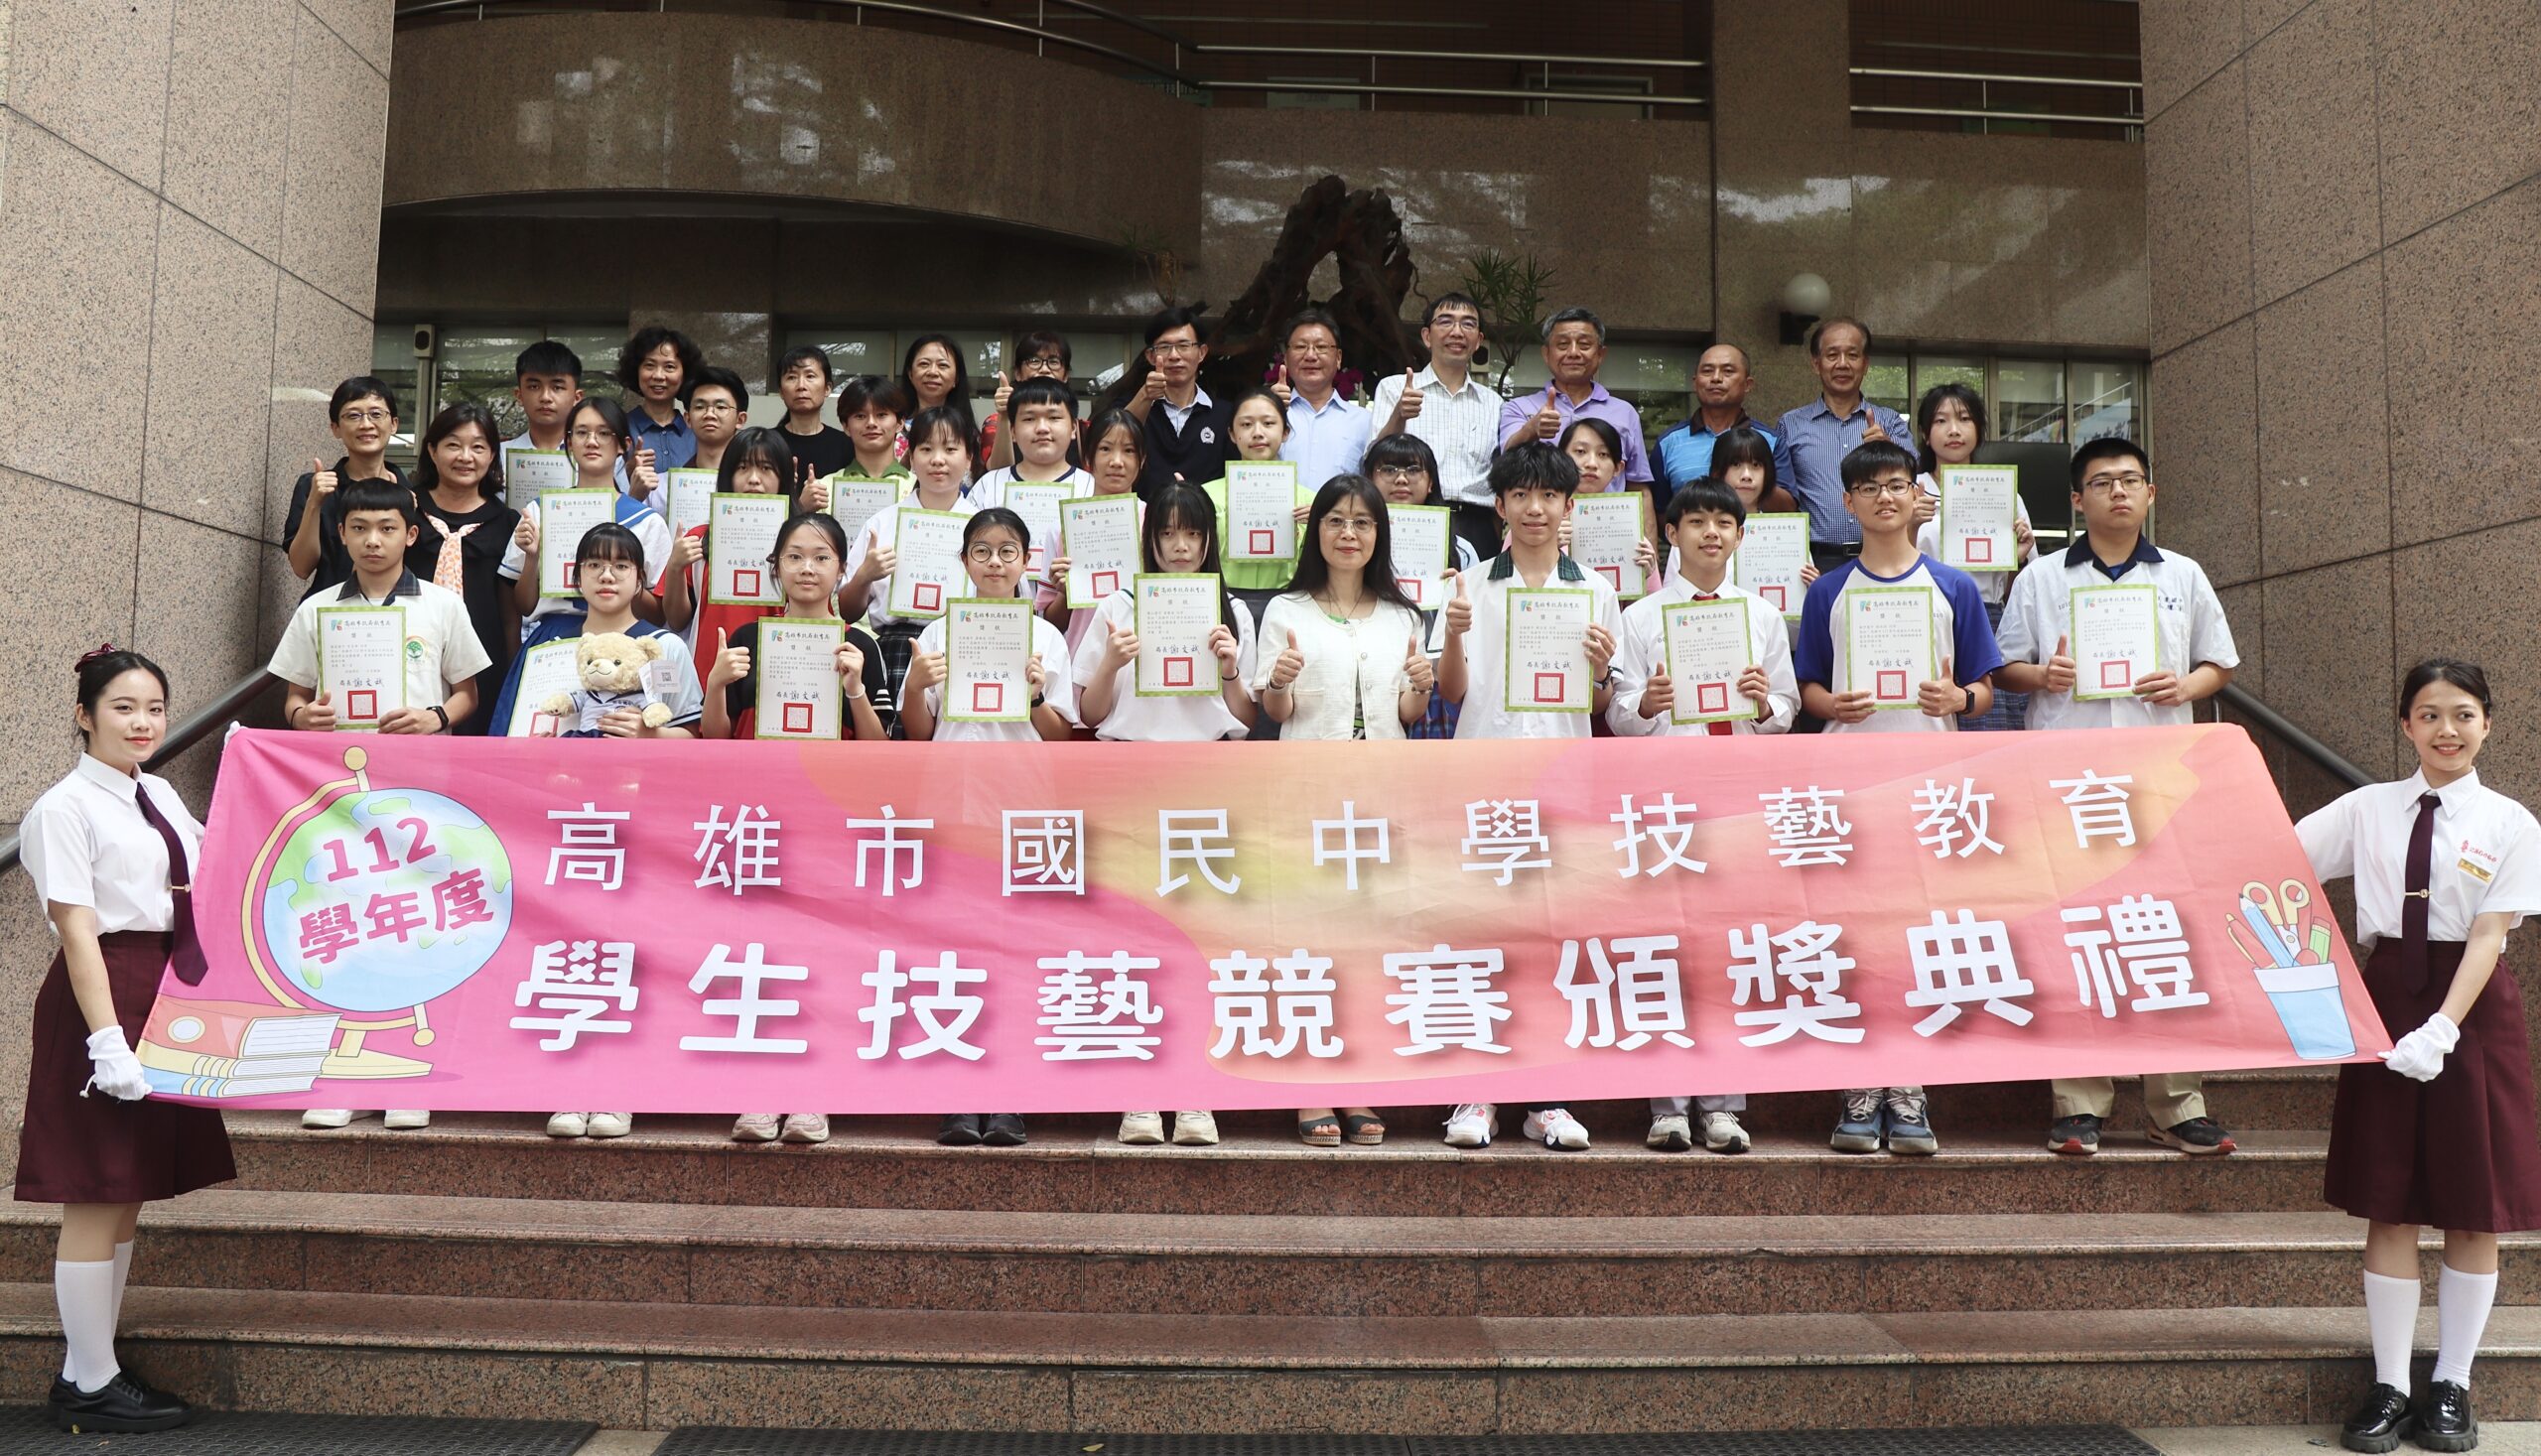 國中技藝教育學生技藝競賽中山工商頒獎 12職群158位學生脫穎而出獲獎